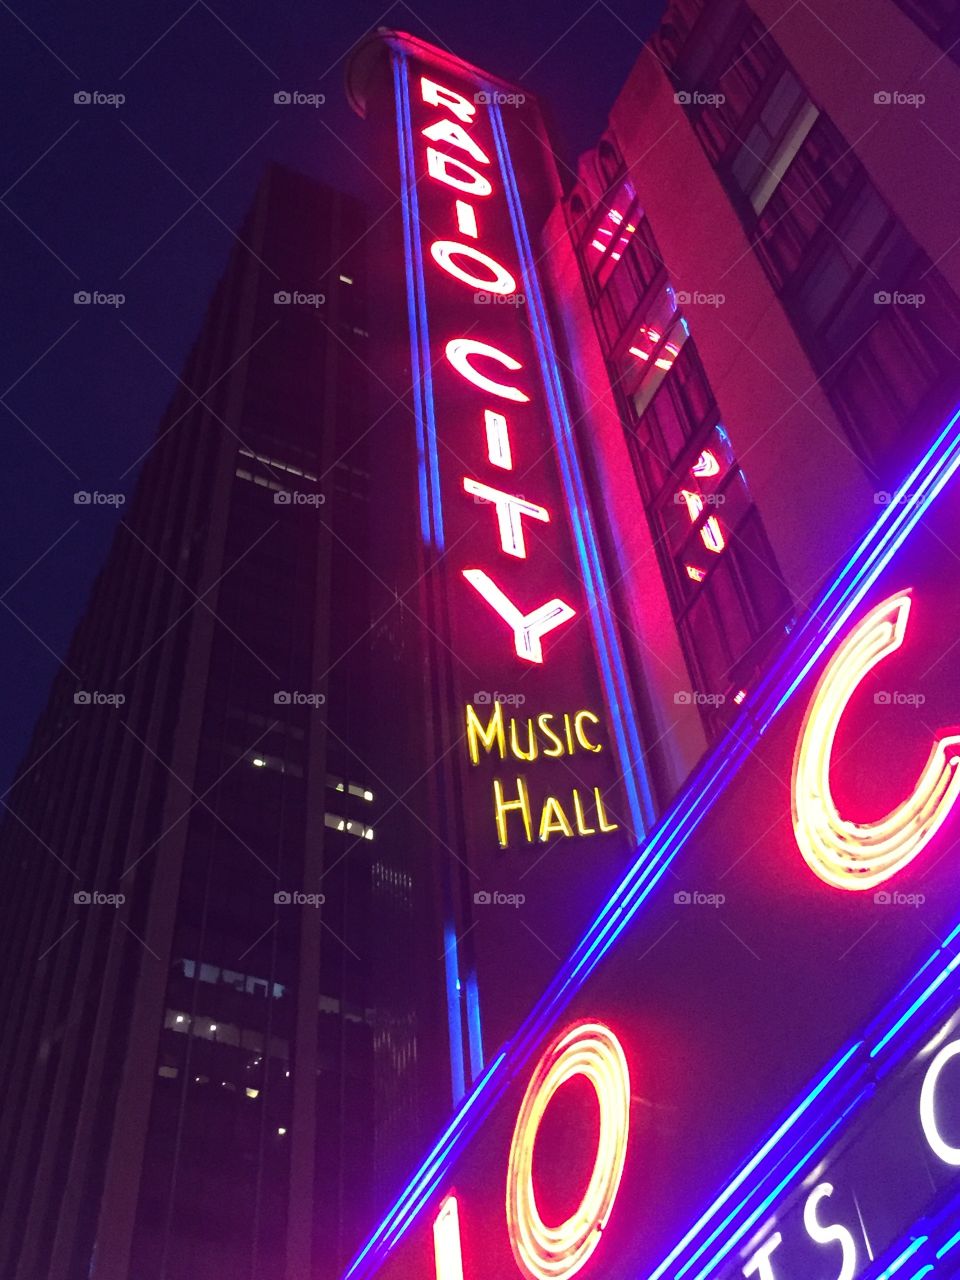 Radio City Music Hall Lights!